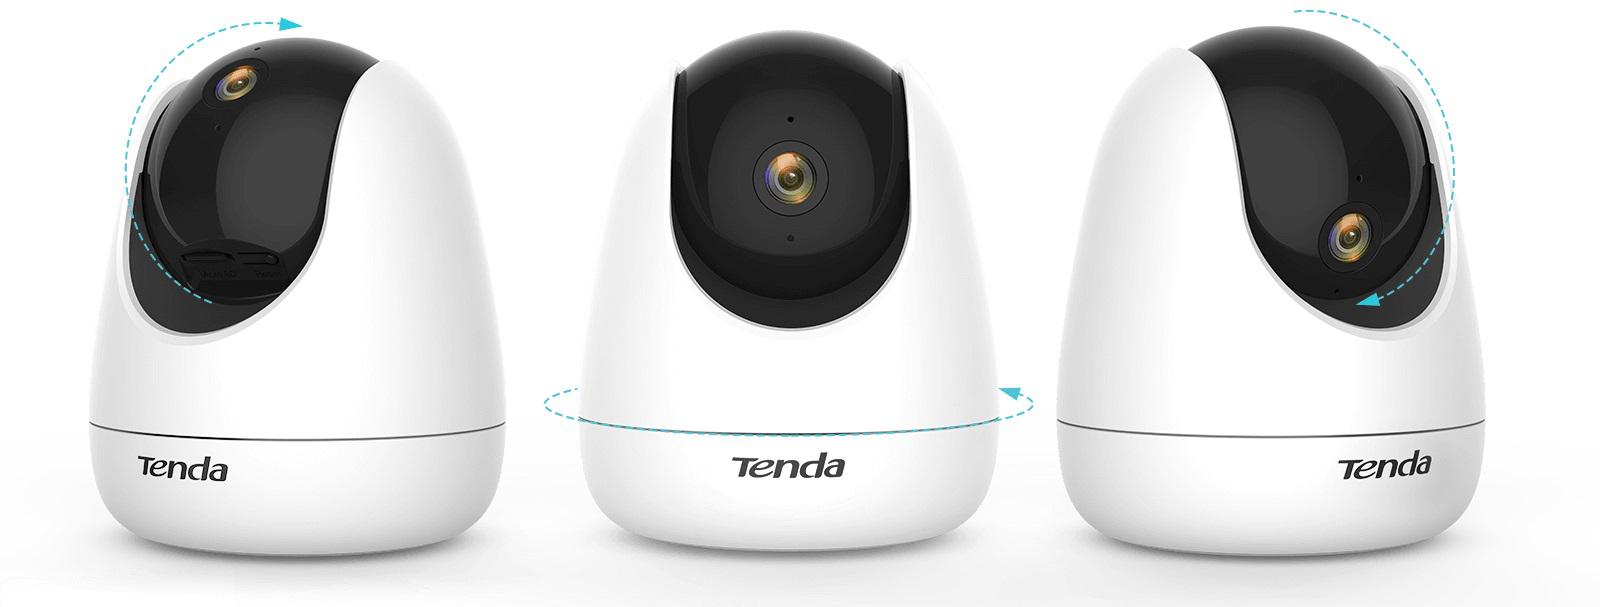 TENDA CP3 - kamera bezpieczeństwa z obrotem i pochyleniem: